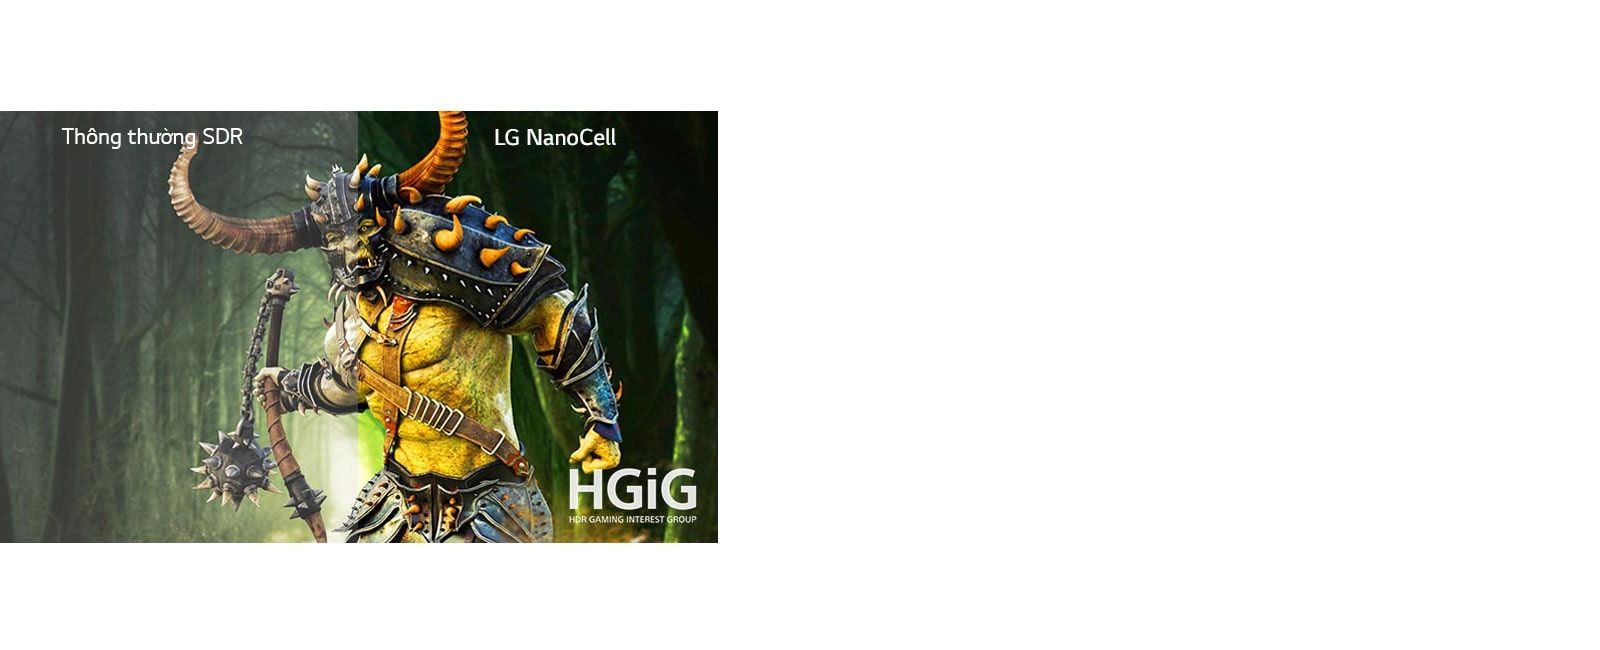 Hình ảnh nhân vật của một trò chơi được hiển thị trên TV thông thường và nửa còn lại trên TV LG NanoCell có HDR